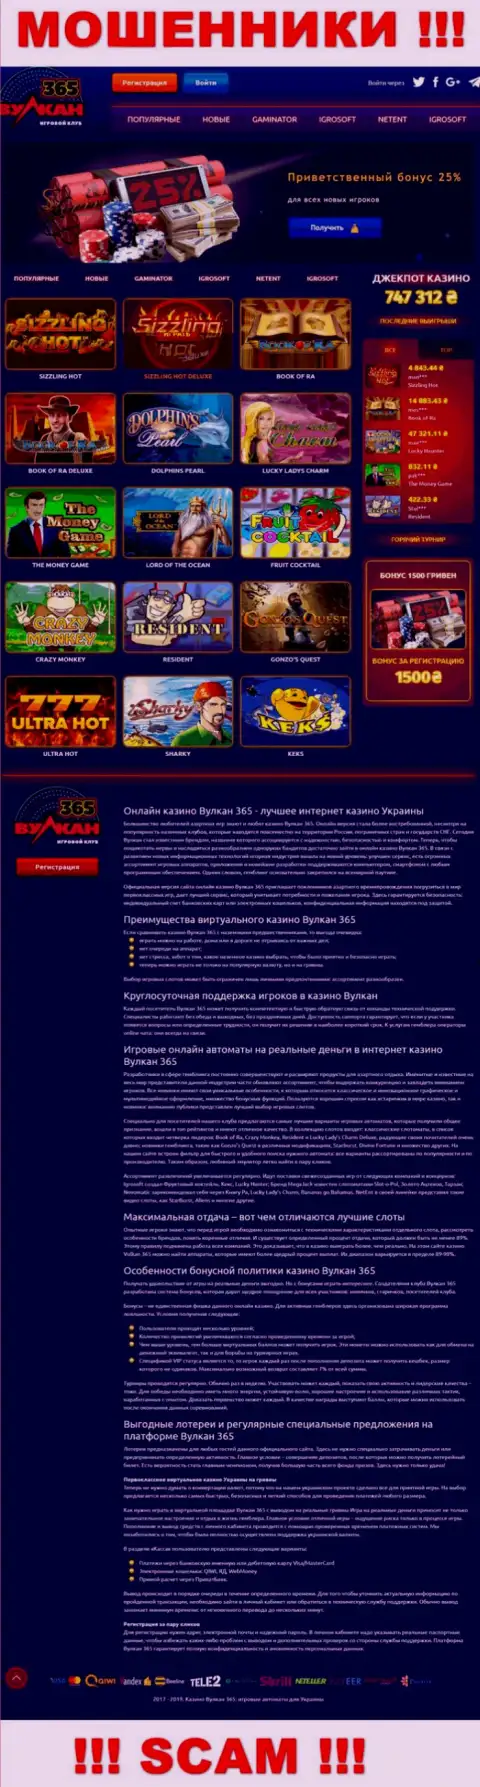 Официальный сайт Vulkan 365 - это яркая страничка для завлечения лохов